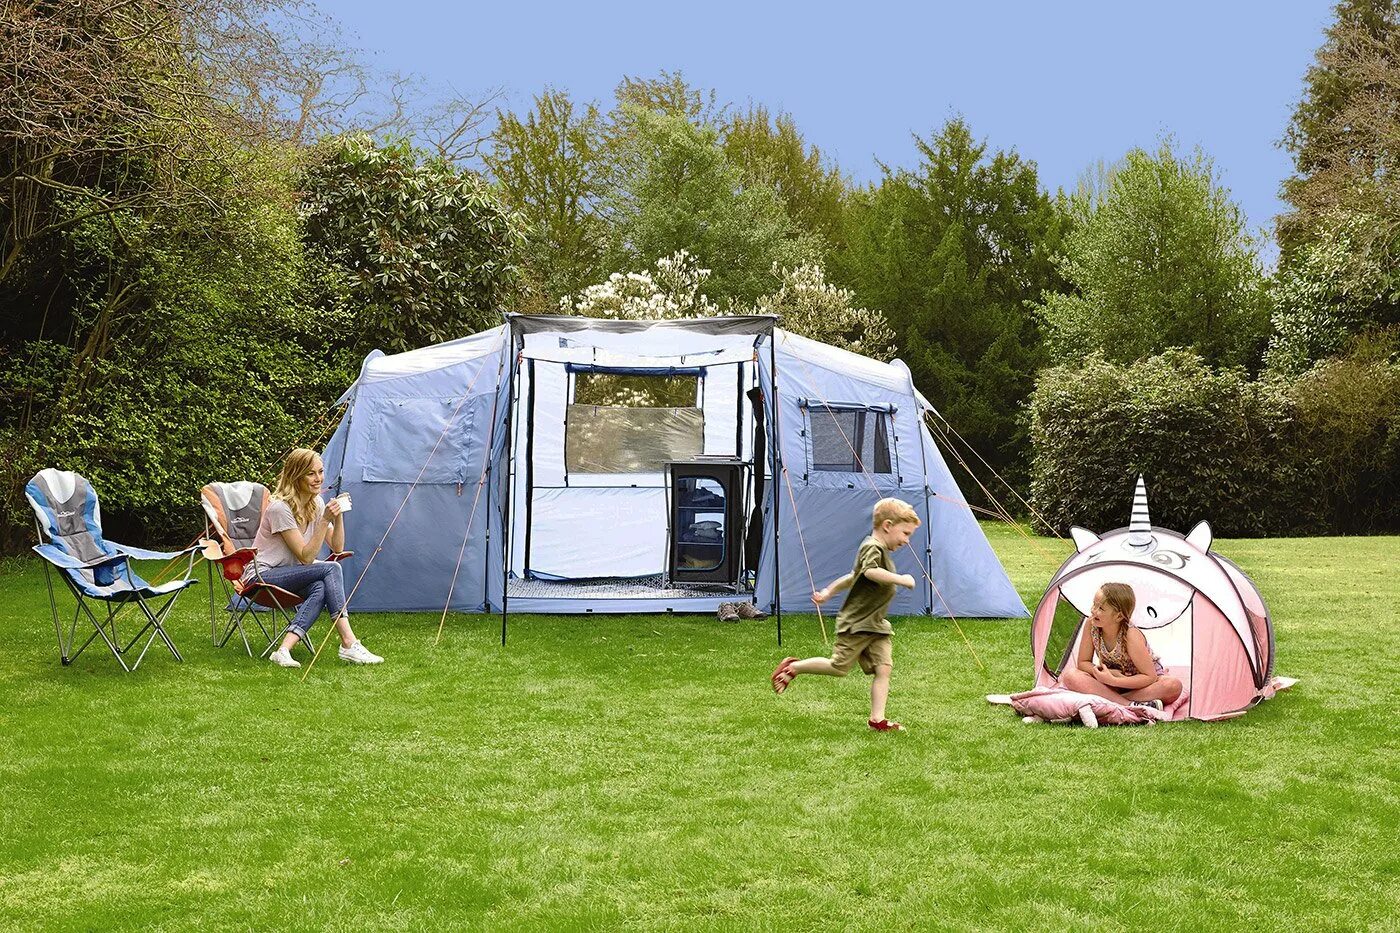 Палатка Camping Tent. Outdoor кемпинг. Семейный кемпинг. Семья в палатке. When we go camping